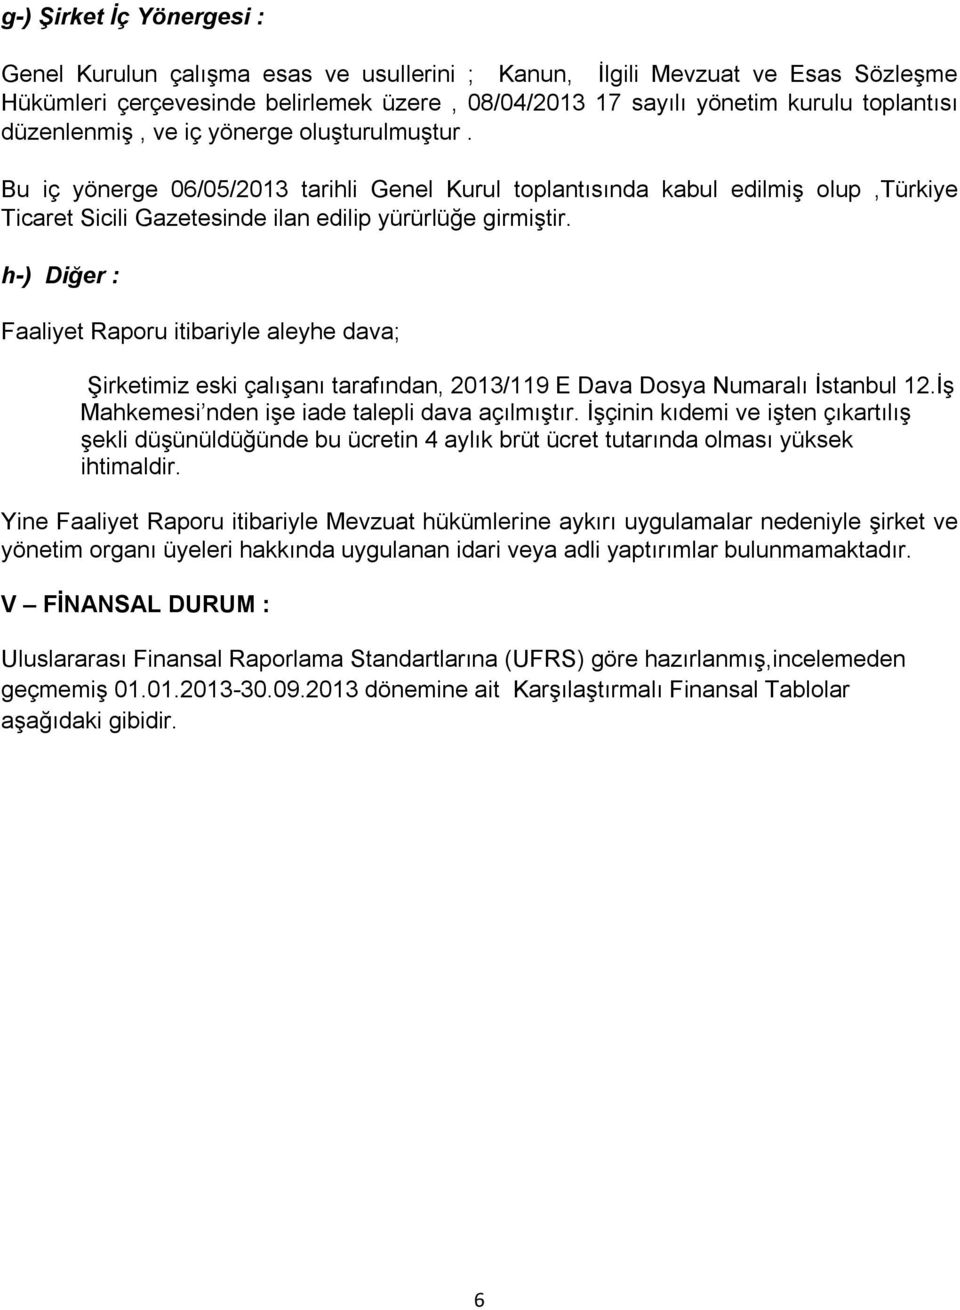 h-) Diğer : Faaliyet Raporu itibariyle aleyhe dava; Şirketimiz eski çalışanı tarafından, 2013/119 E Dava Dosya Numaralı İstanbul 12.İş Mahkemesi nden işe iade talepli dava açılmıştır.